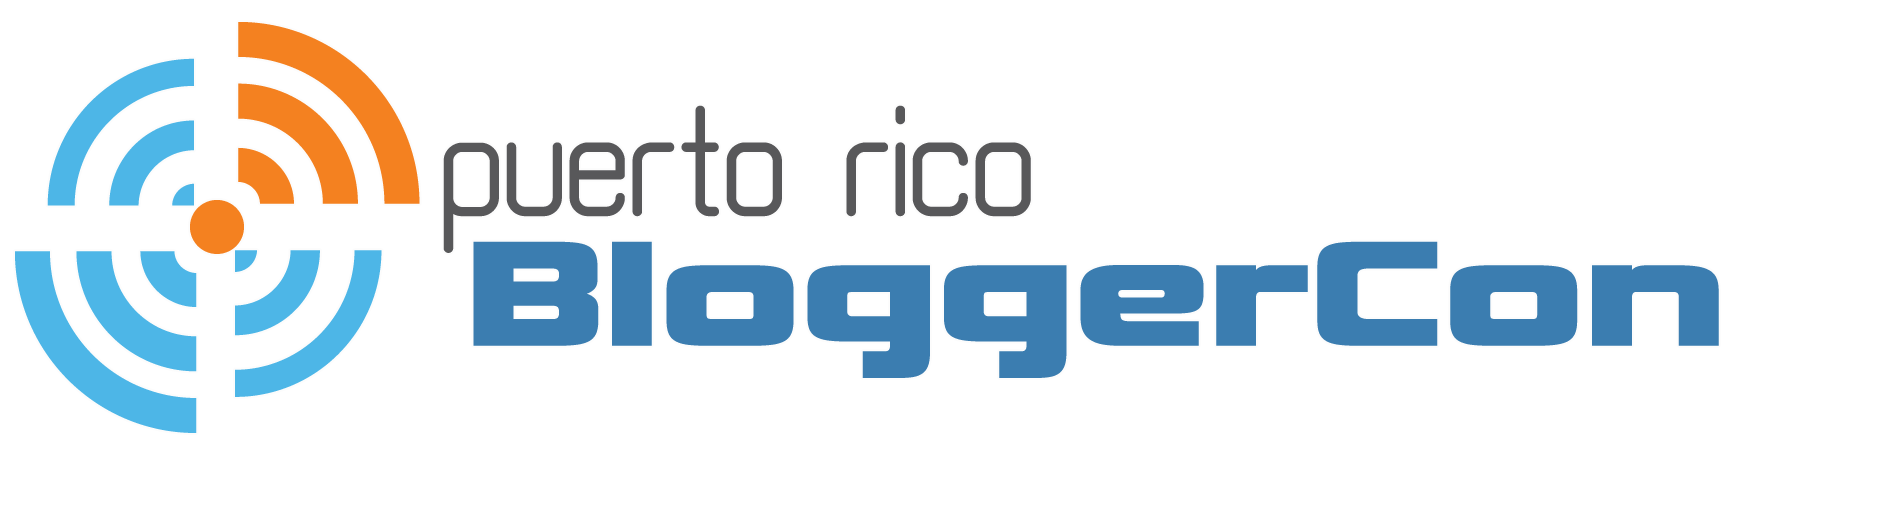 Puerto Rico BloggerCon